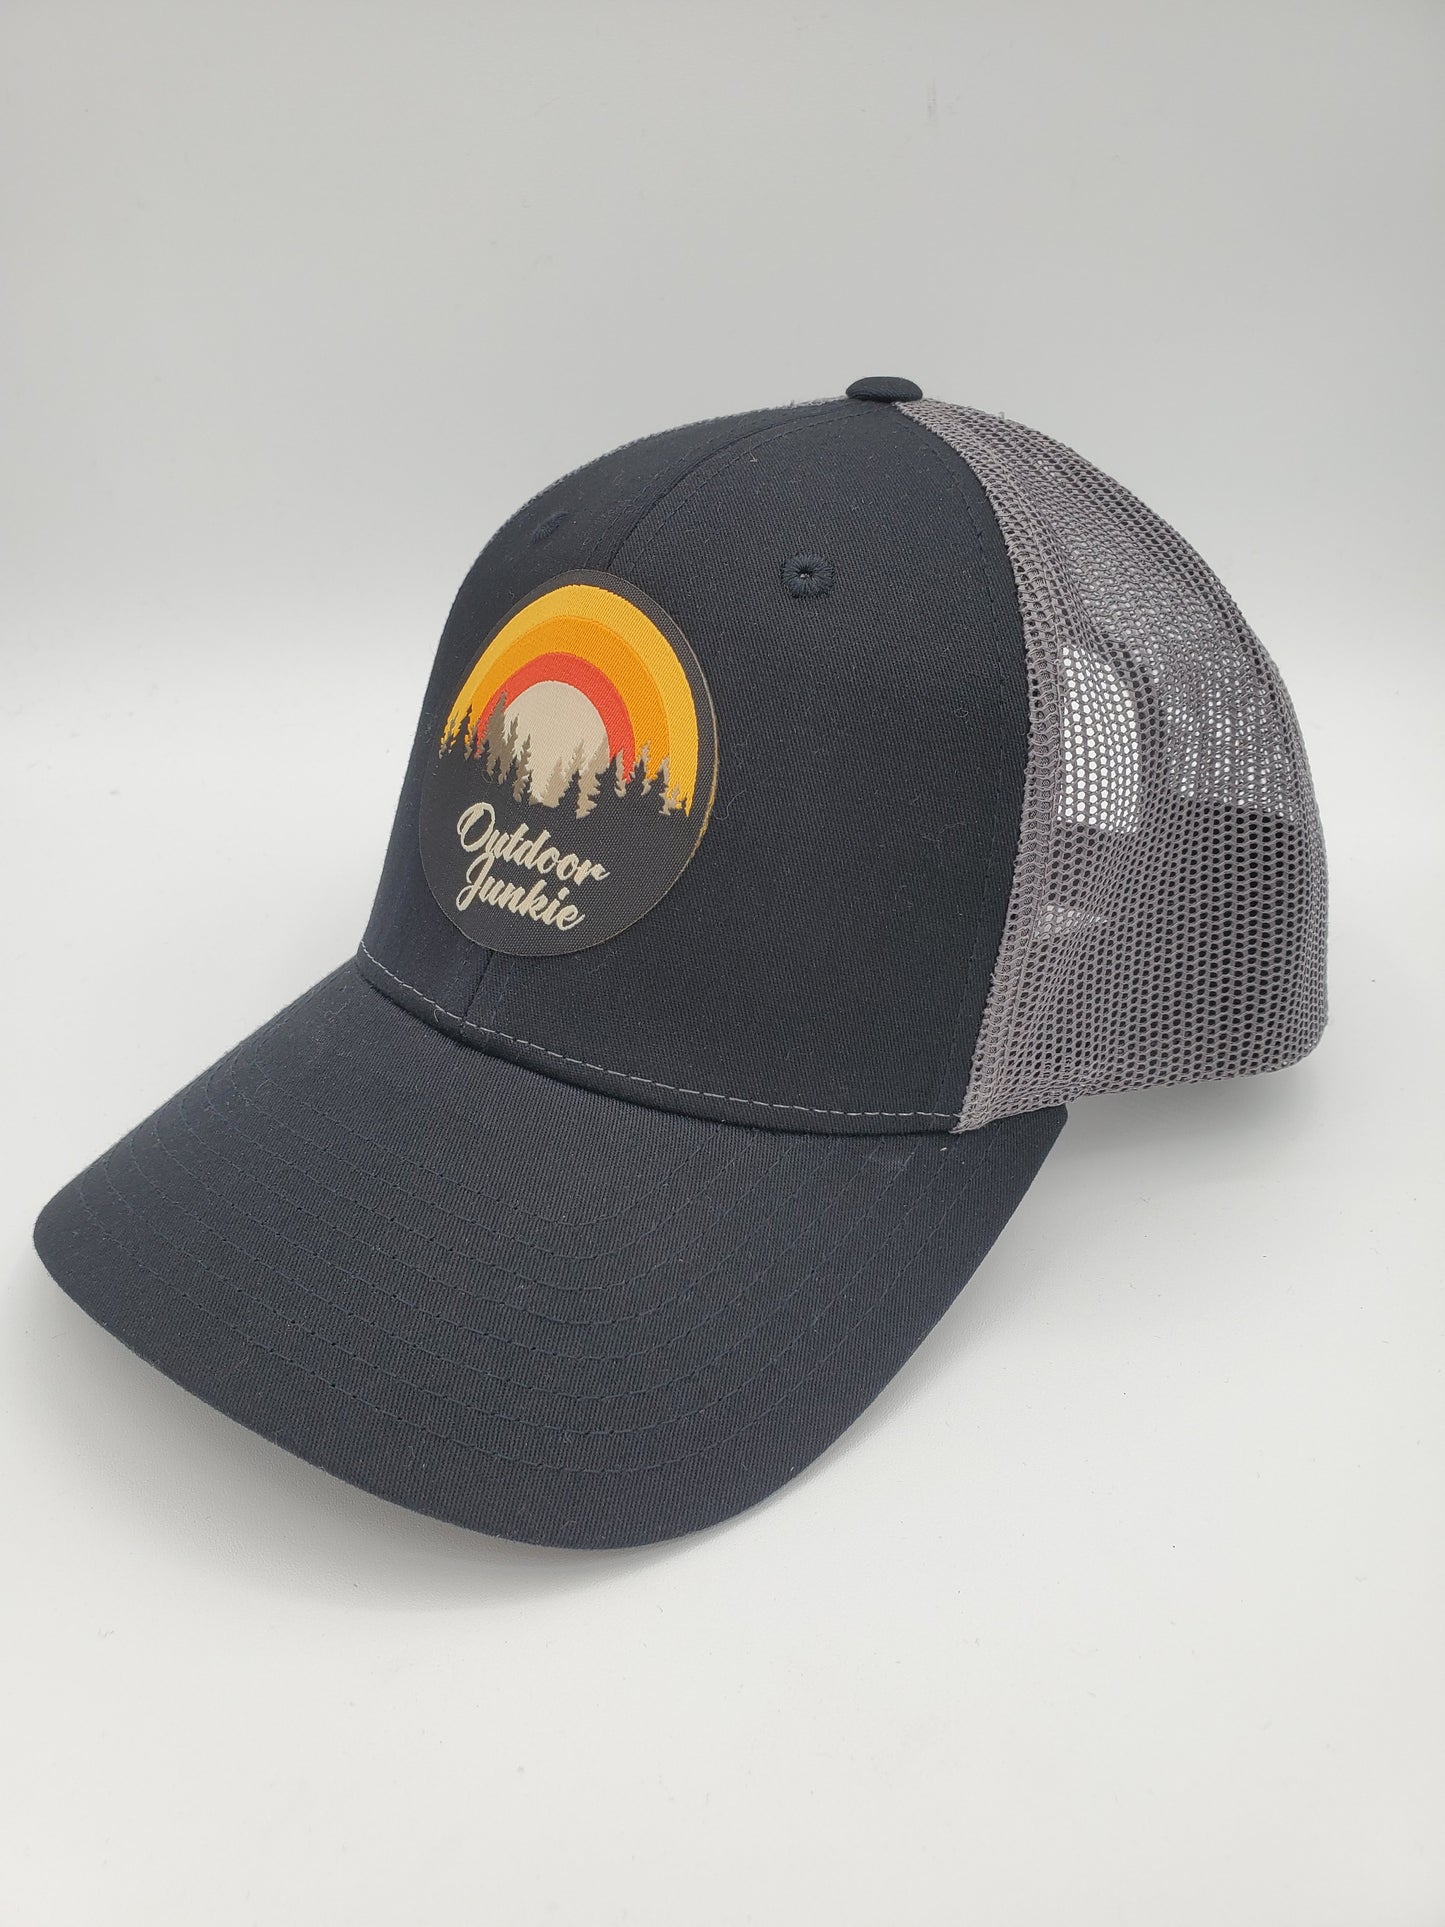 "Outdoor Junkie" Design Trucker Hat (Charcoal Mesh/ Black Fabric)